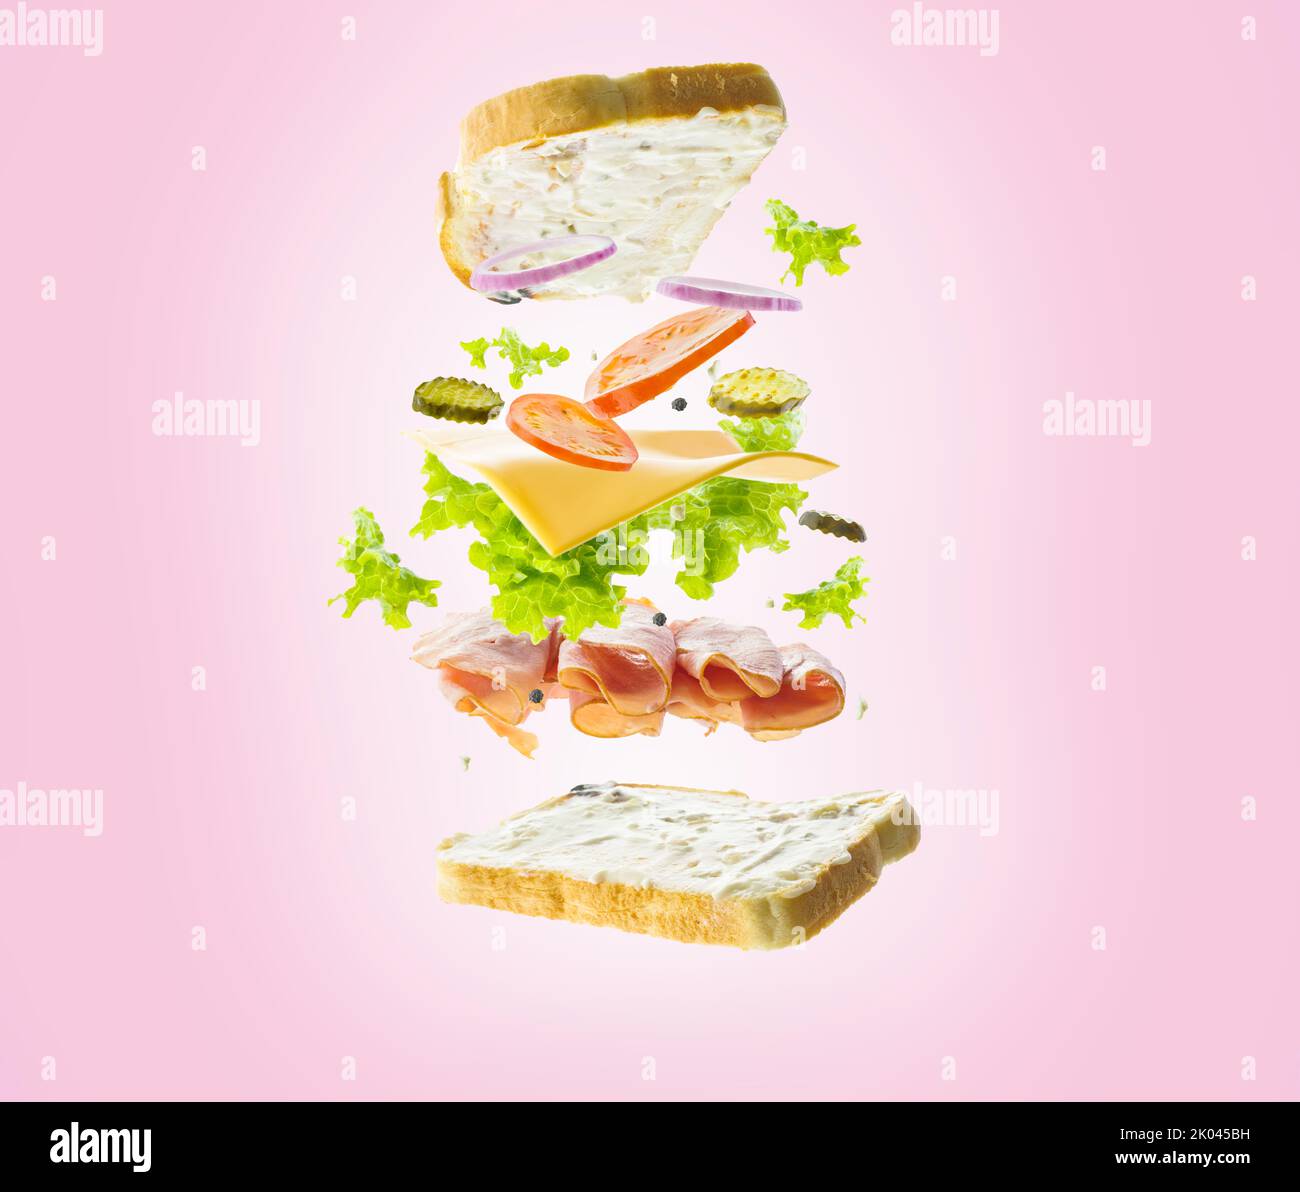 Klassisches amerikanisches Sandwich im gefrorenen Flug auf einem rosa Hintergrund. Fast Food, Vitamine, Eiweiß, Bio-Produkte. Restaurant, Hotel, Café, Catering, ho Stockfoto